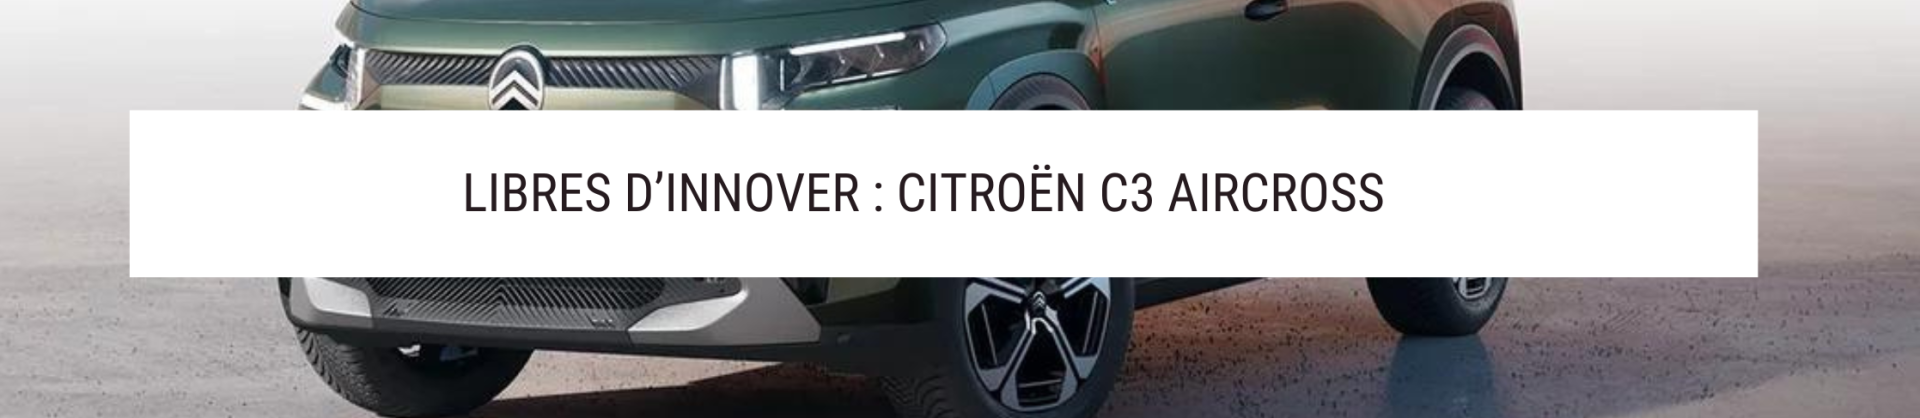 Nouveau Citroën C3 AIRCROSS